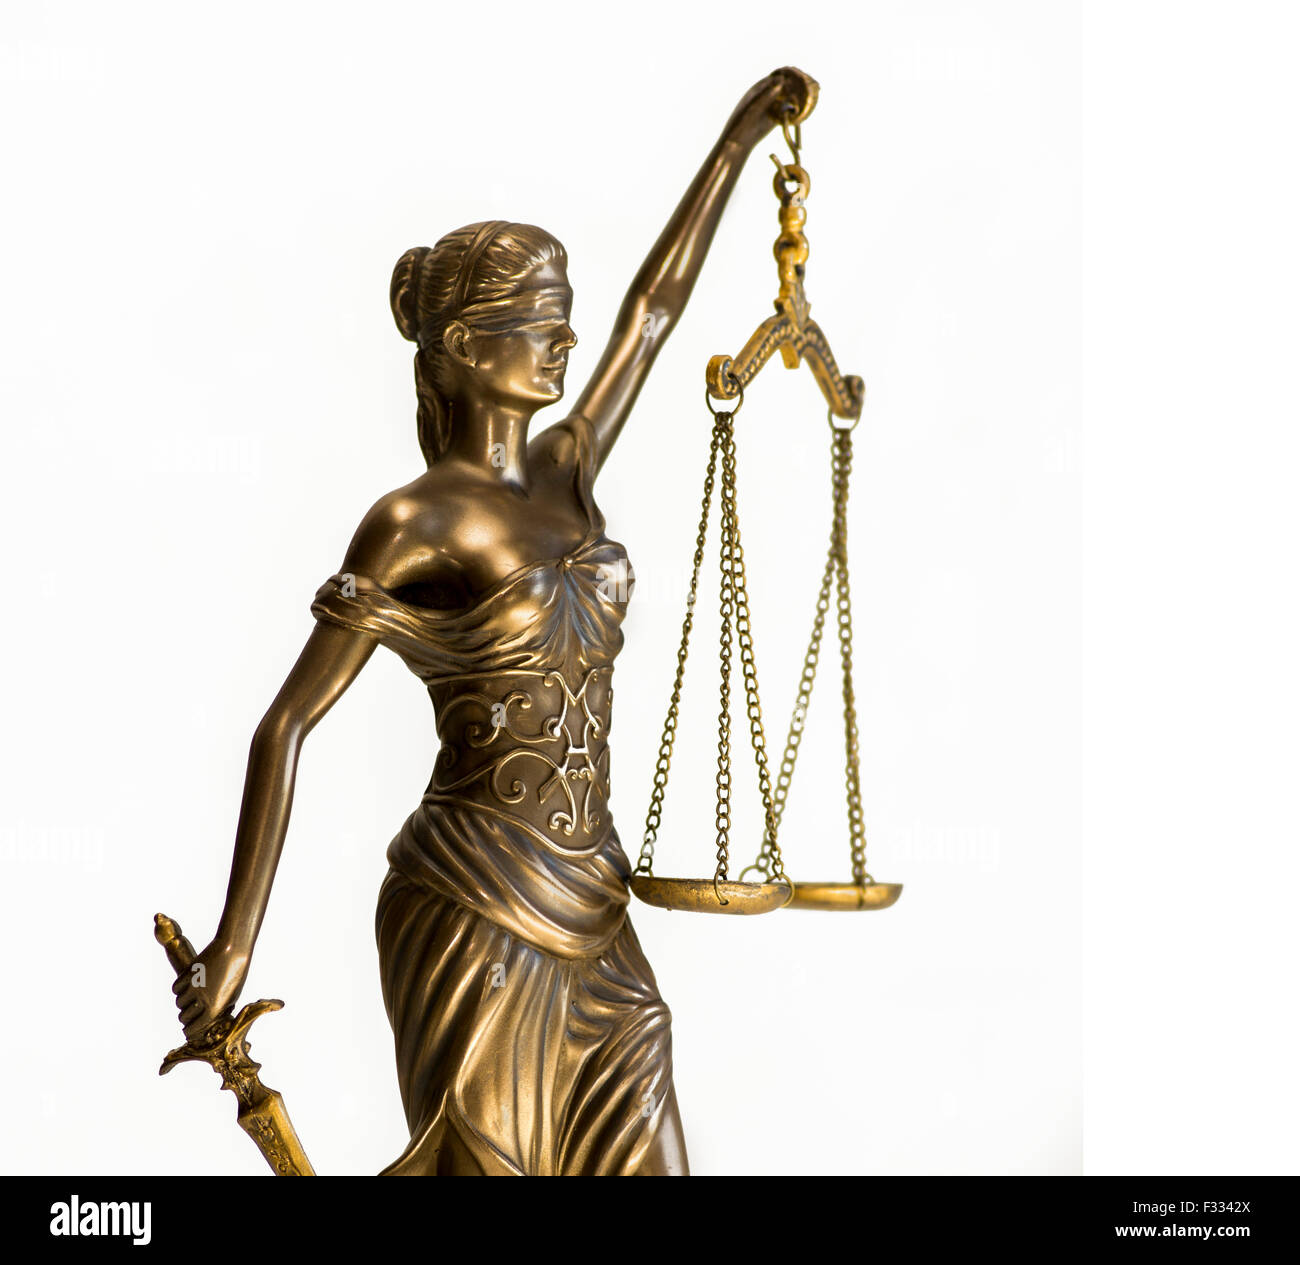 Waage der Gerechtigkeit Symbol - juristische Gesetz Konzept Bild  Stockfotografie - Alamy